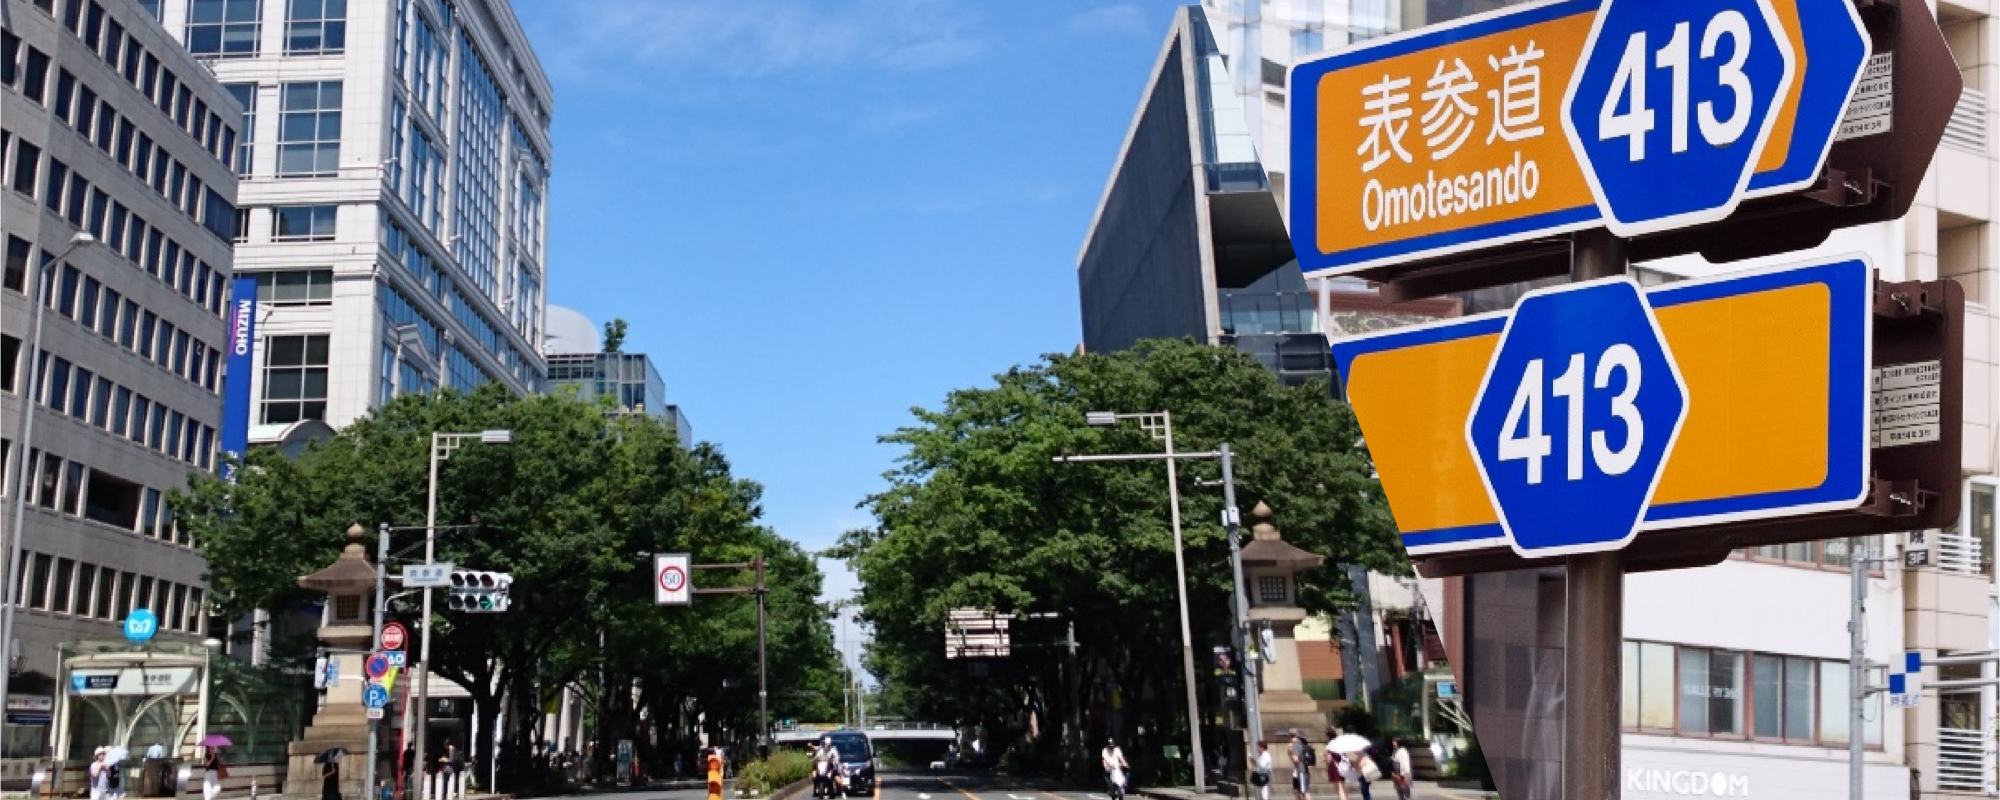 <a class='campaign-banner' href='https://beaura.jp/campaign_list/'><img
src='https://beaura.jp/wp-content/uploads/2023/01/bn_20230326-1.png' alt='キャンペーンバナー' /></a>